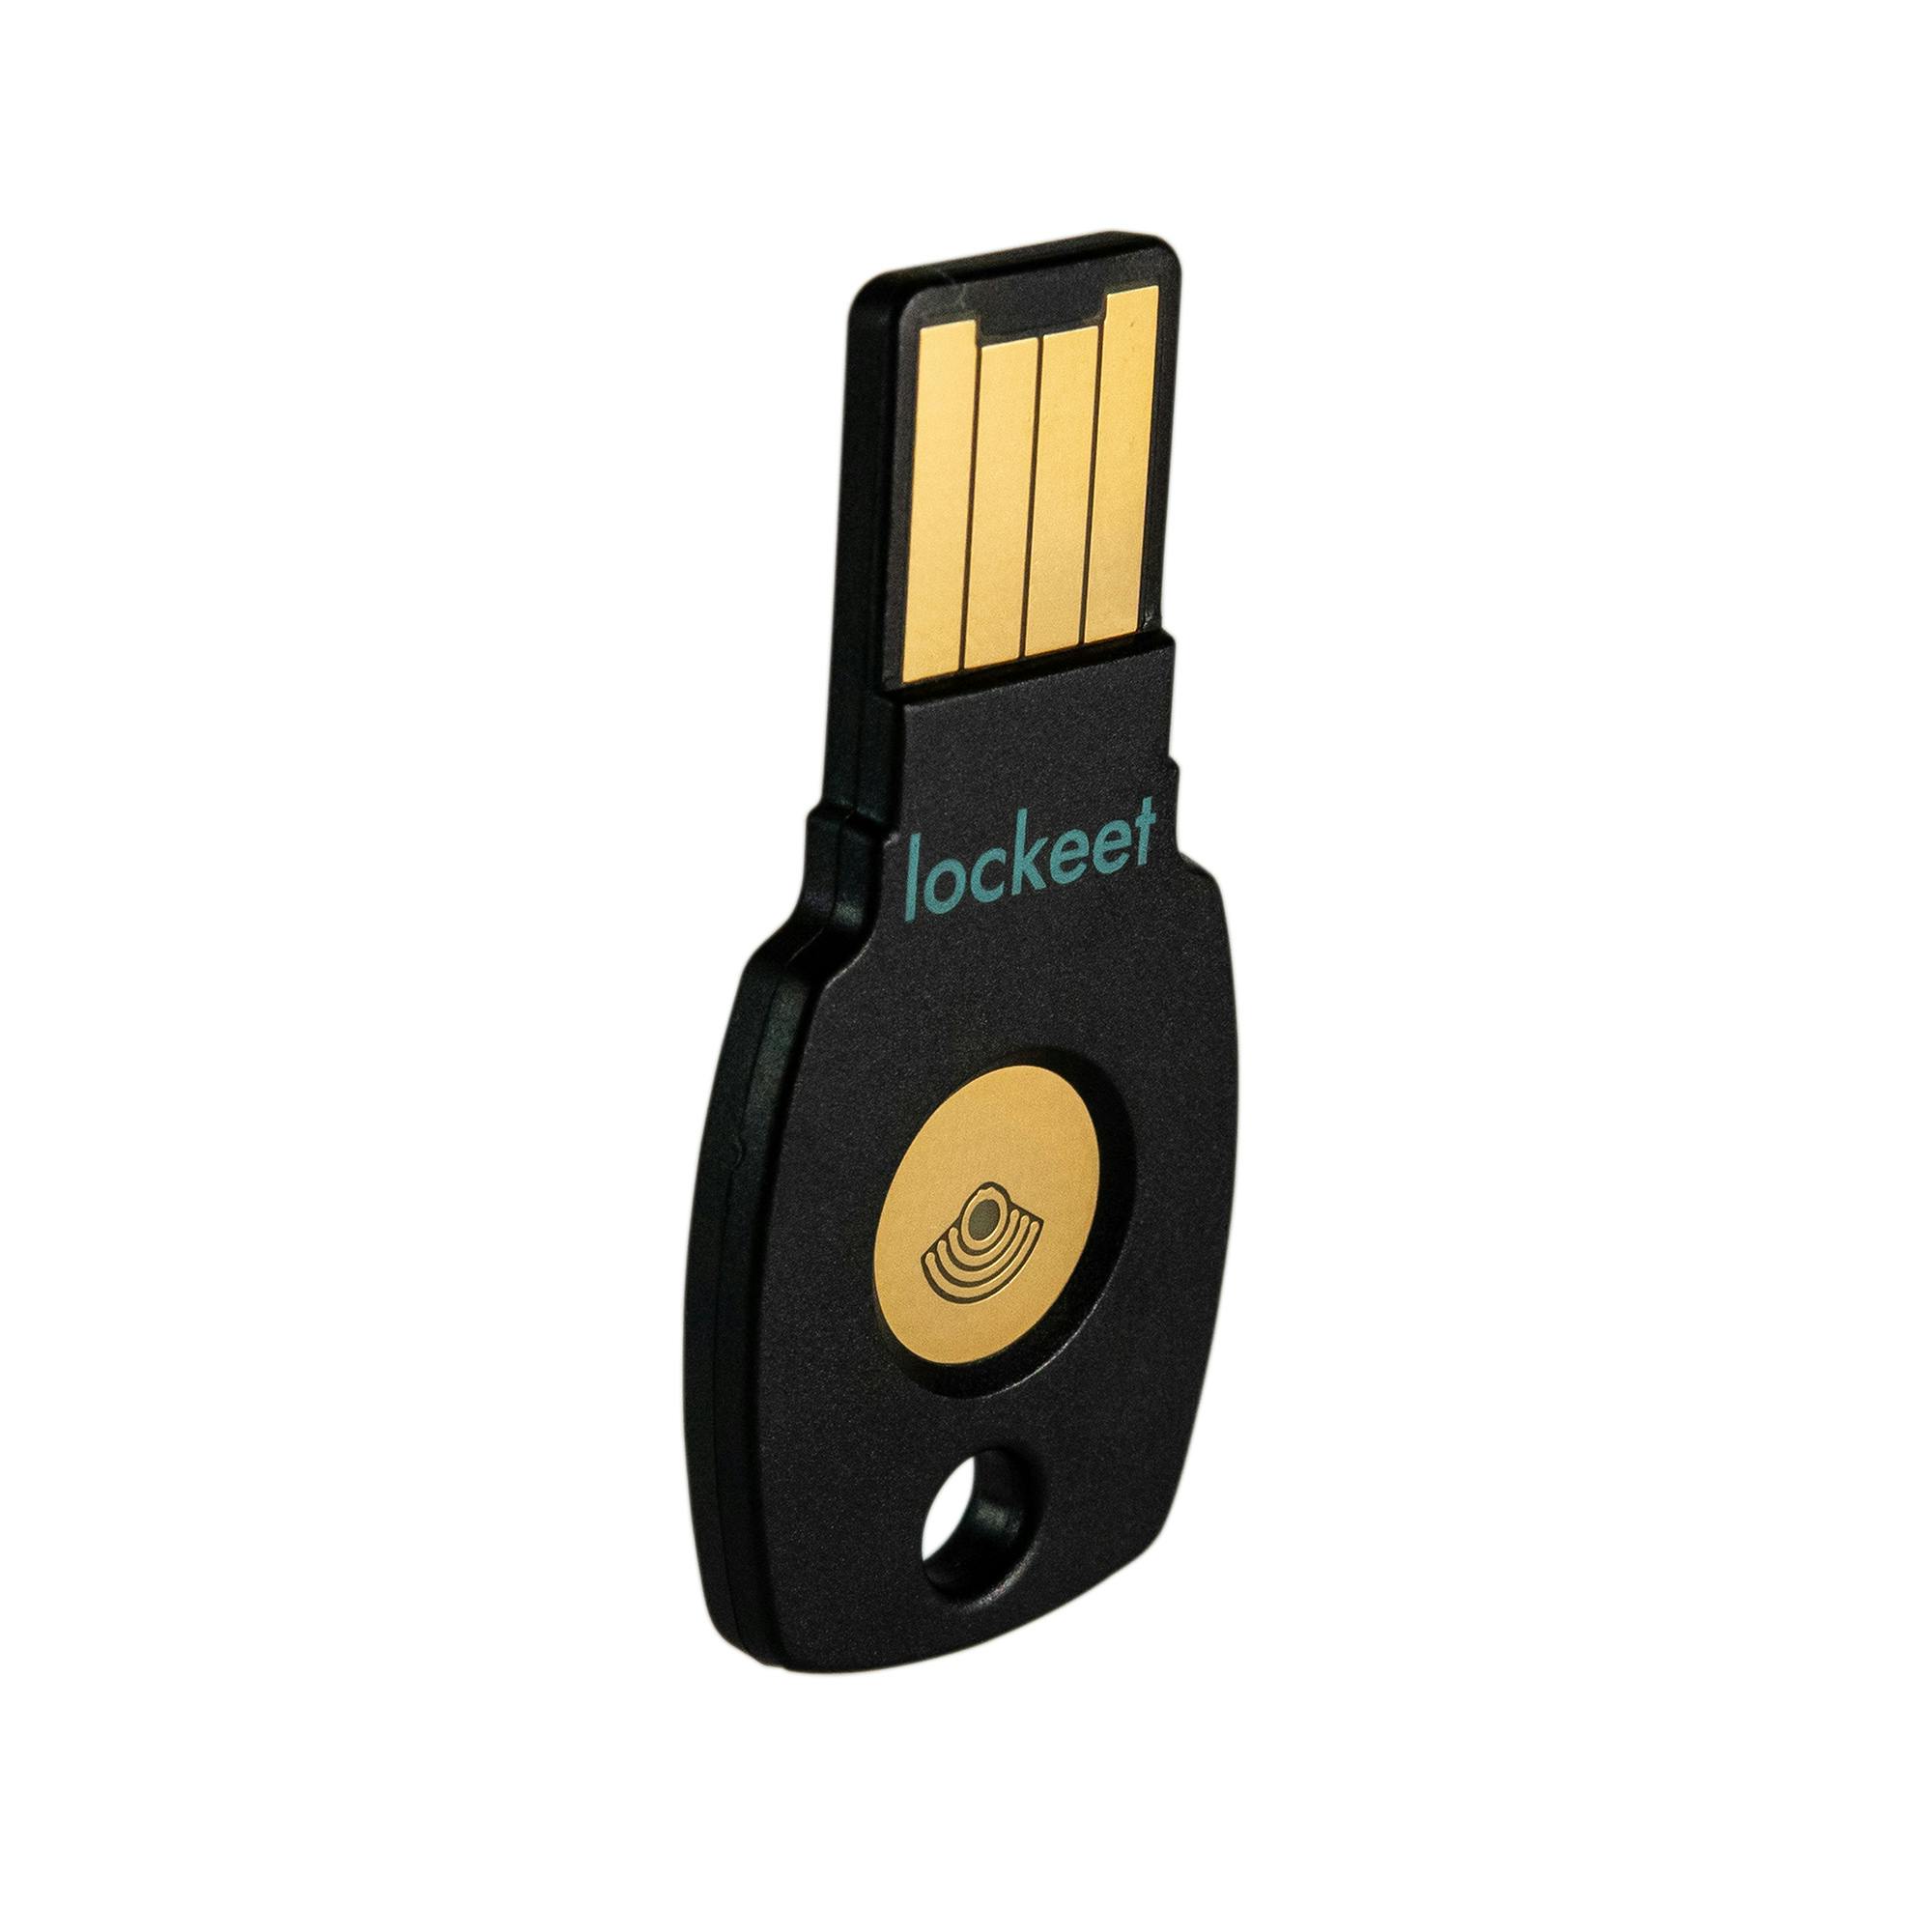 Como utilizar a chave de segurança Lockeet no meu gerenciador de senhas?